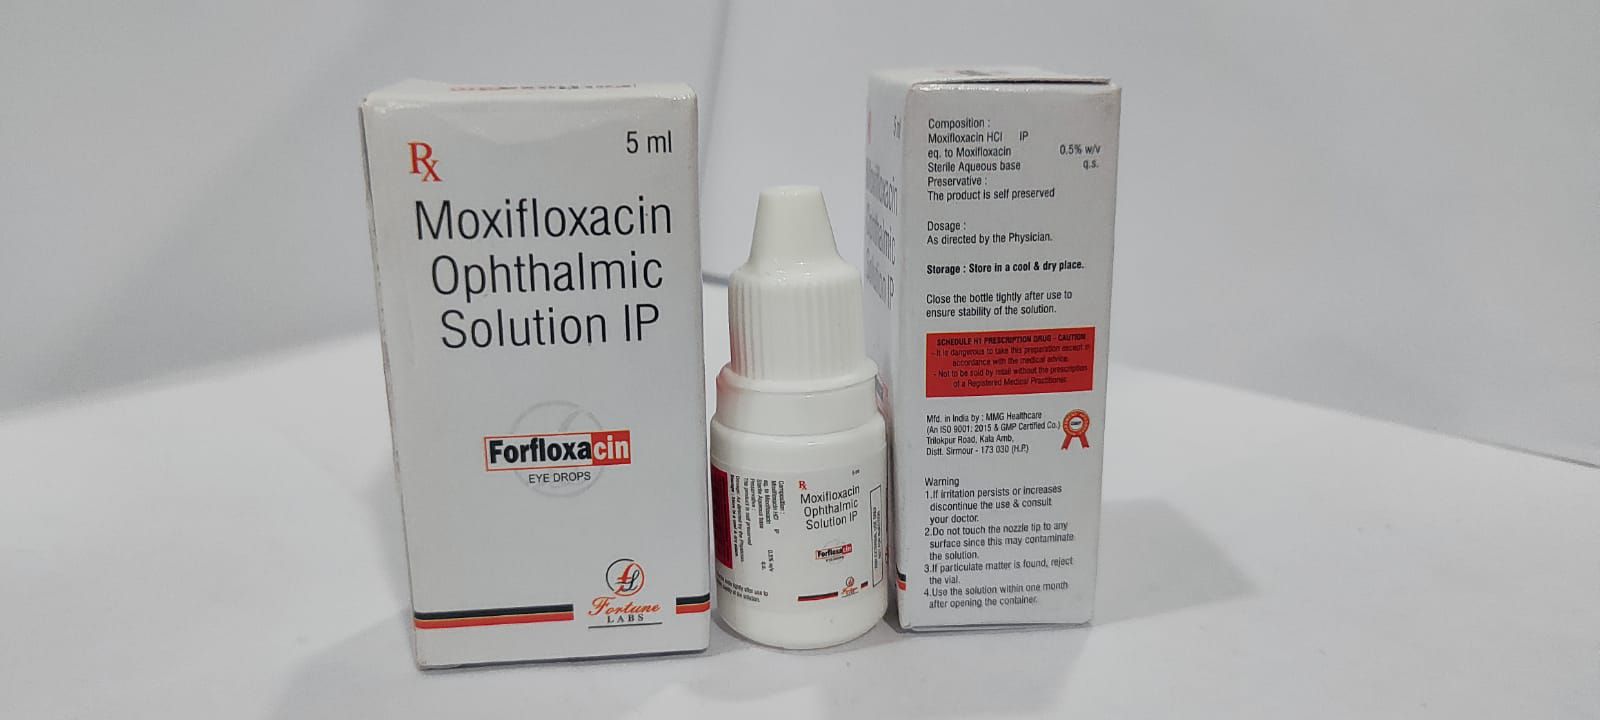 moxifloxacin 0.5 w/v